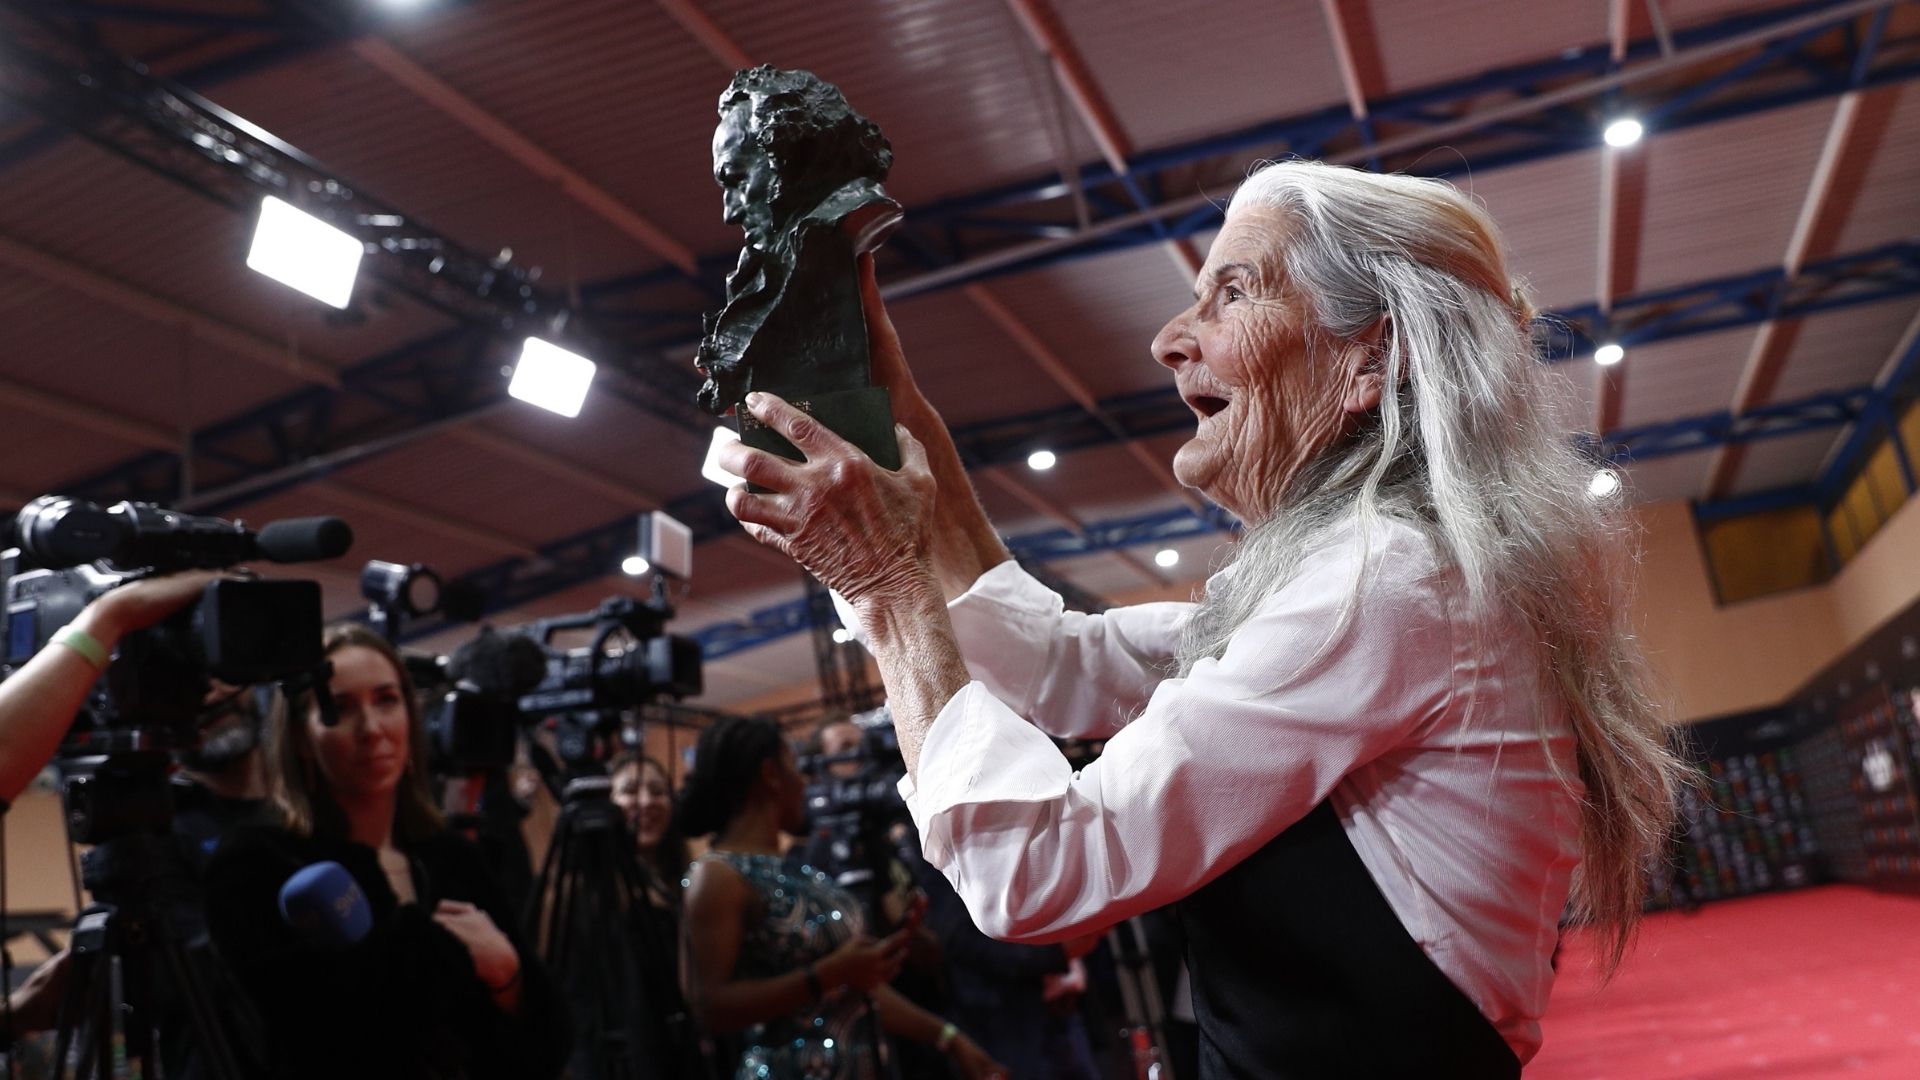 Ir al Video Benedicta Sánchez, mejor actriz revelación, a sus 84 años, por 'O que arde': "La vida te da sorpresas"